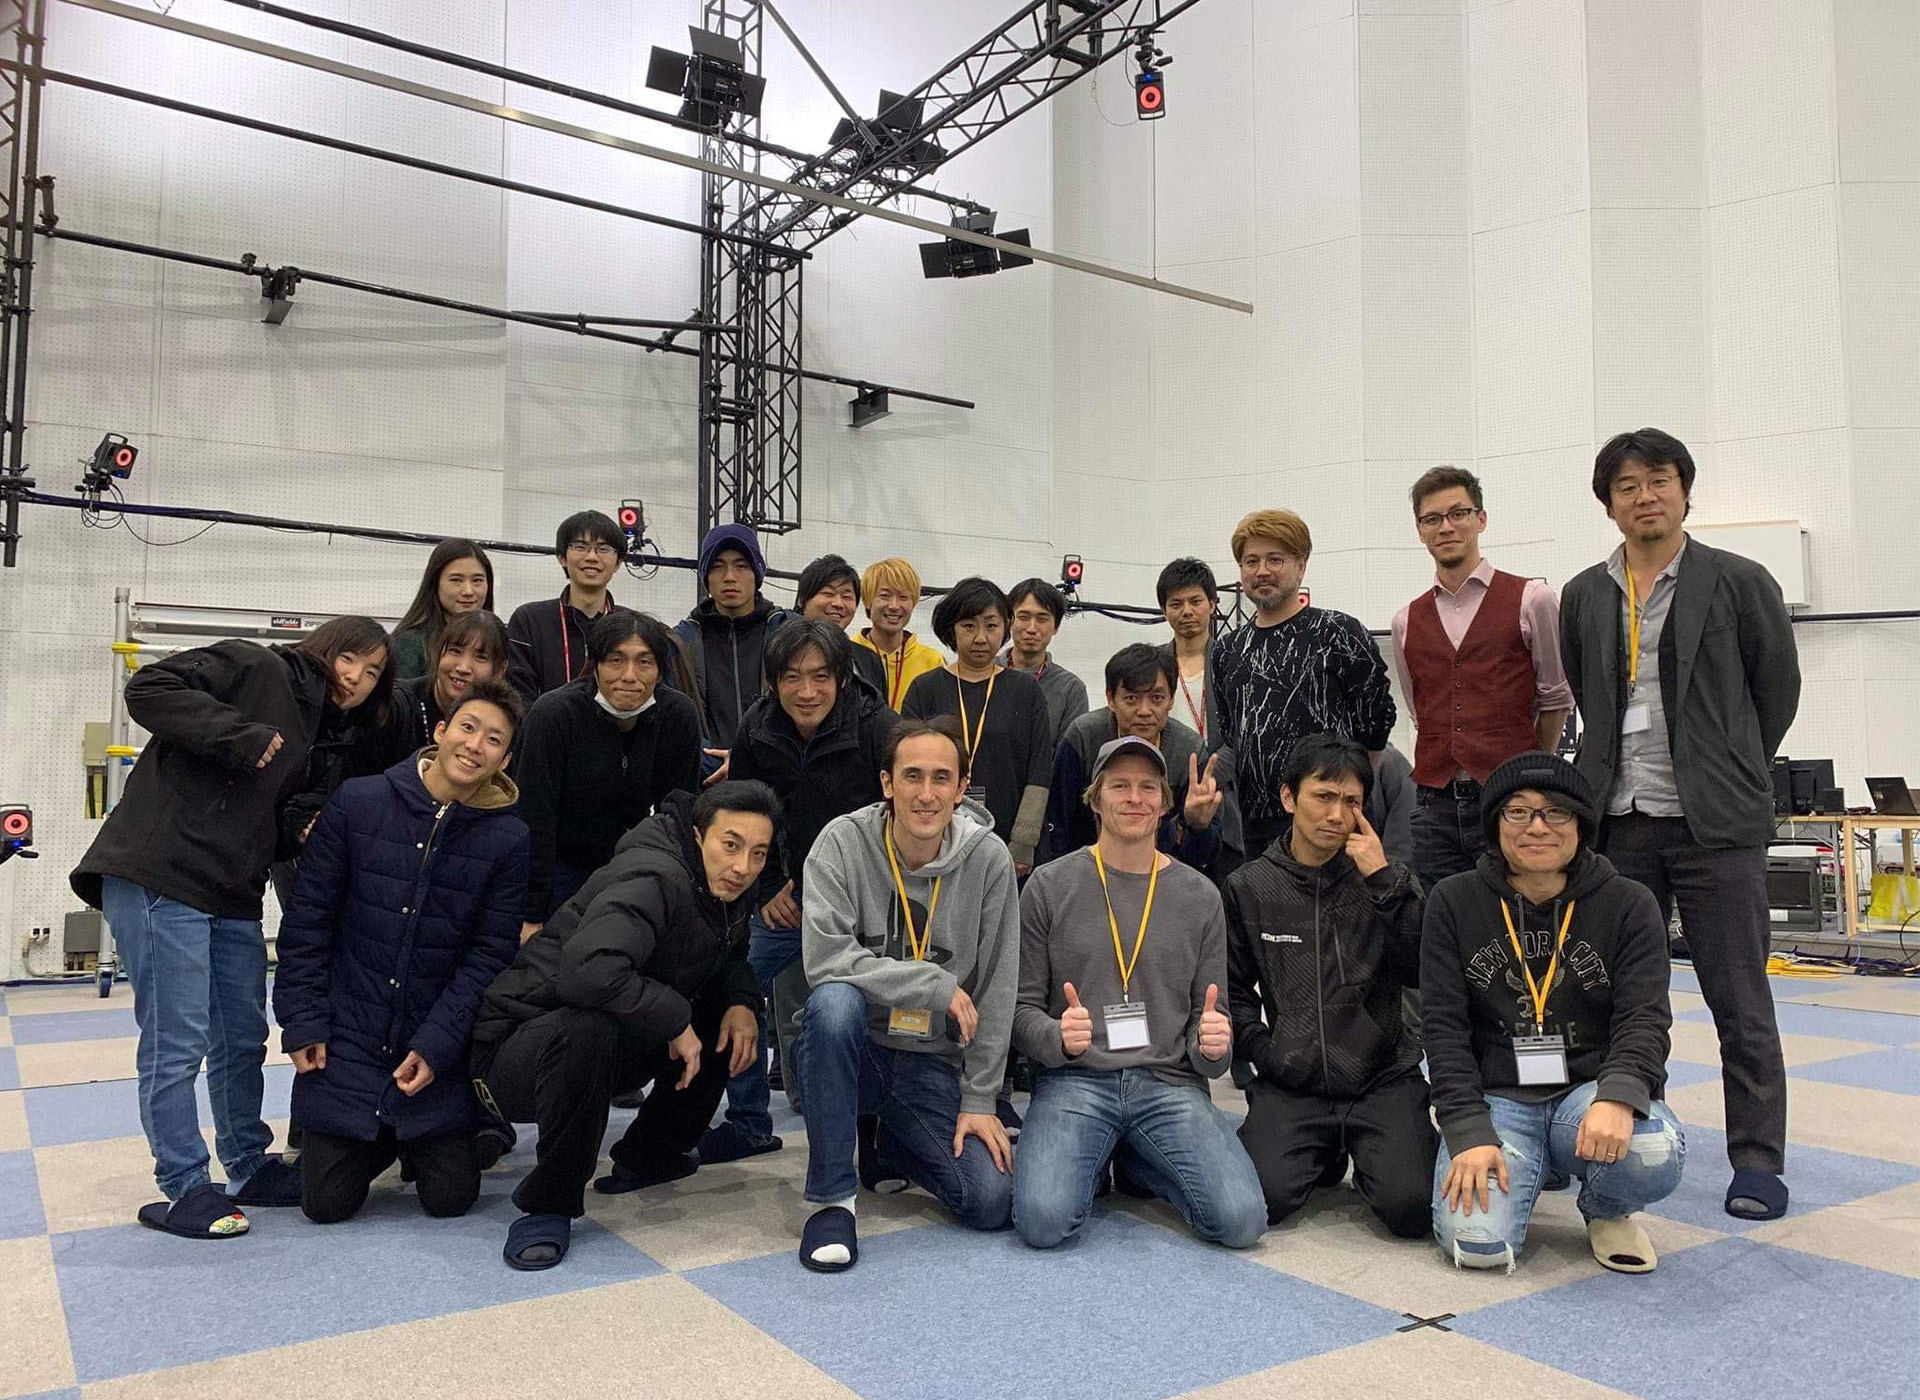 هیدئاکی ایتسونو، کاگردان DMC 5 و تیمش در حال کار روی یک بازی جدید